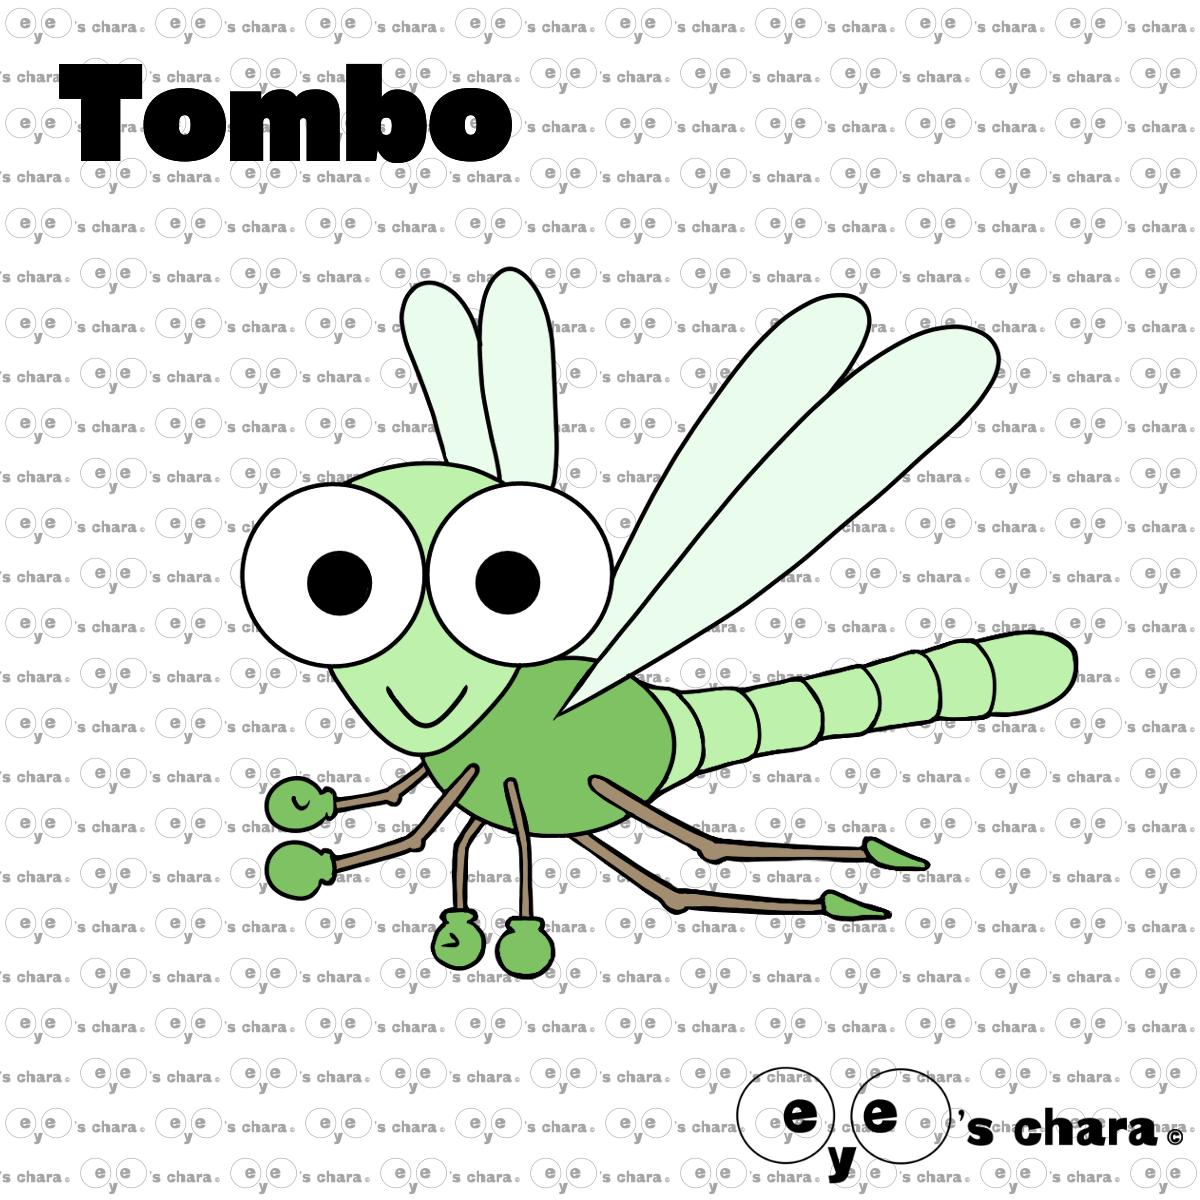 Tomboh (トンボー)